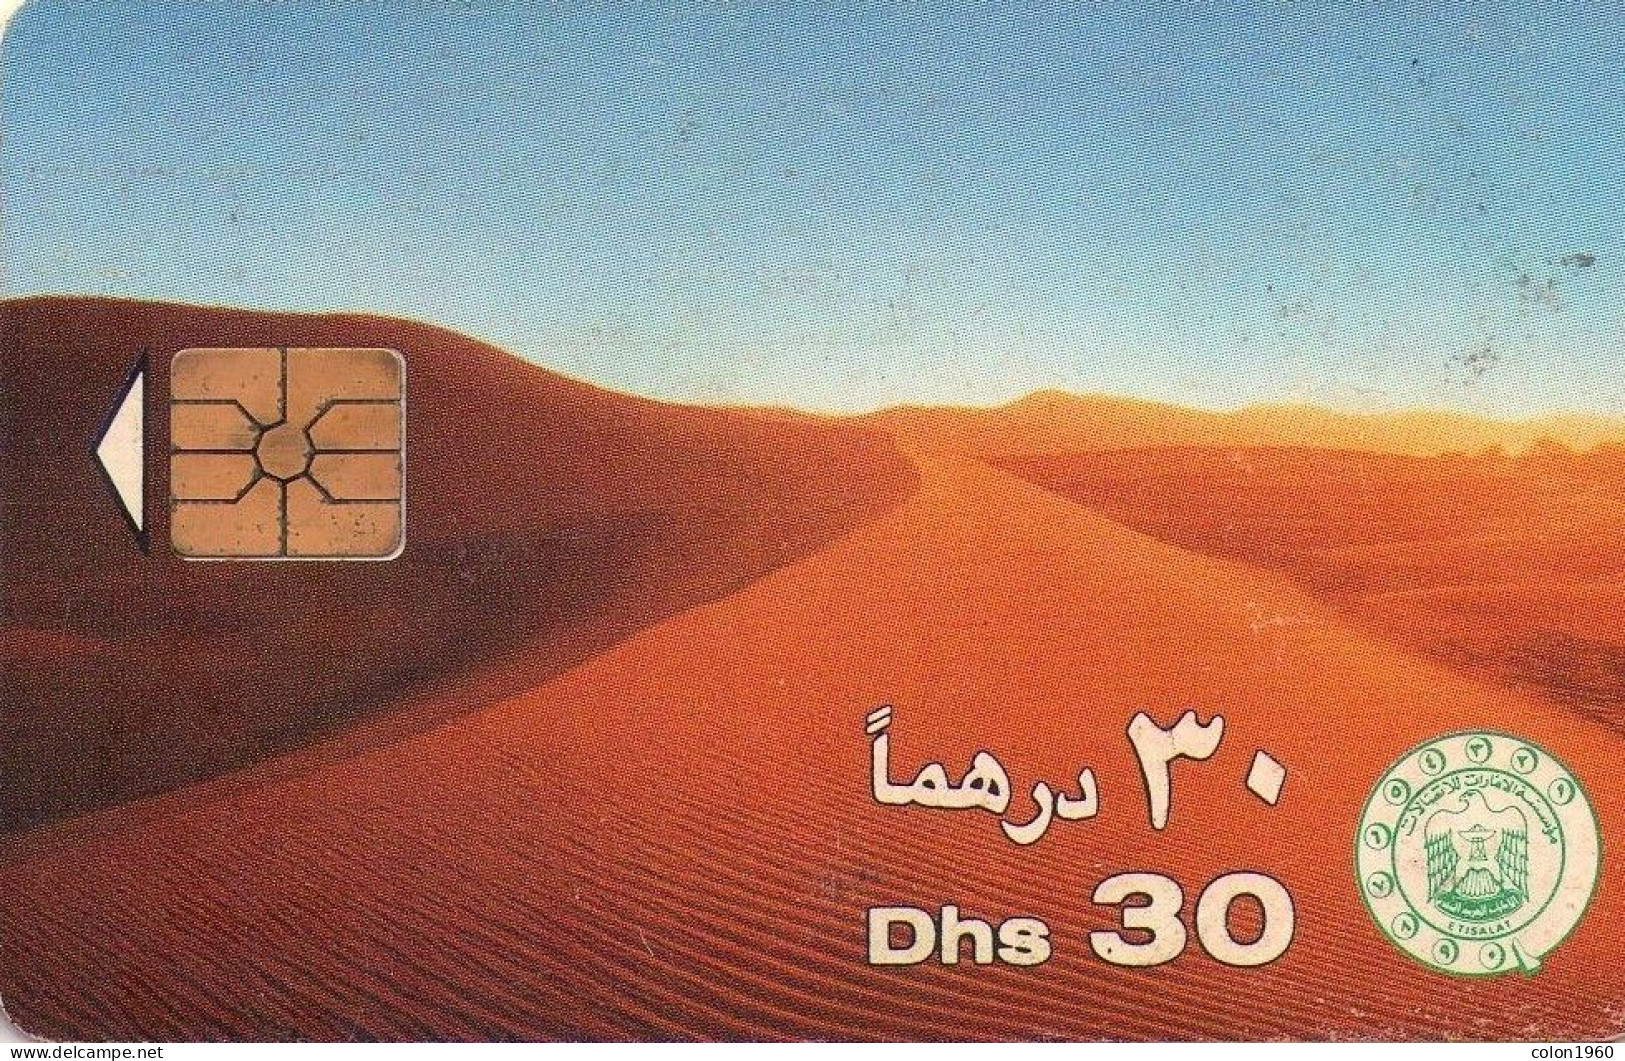 EMIRATOS ARABES UNIDOS. AE-ETI-CHP-0002C. Desert Sand Dunes (CN "9511"). 1995. (052) - United Arab Emirates